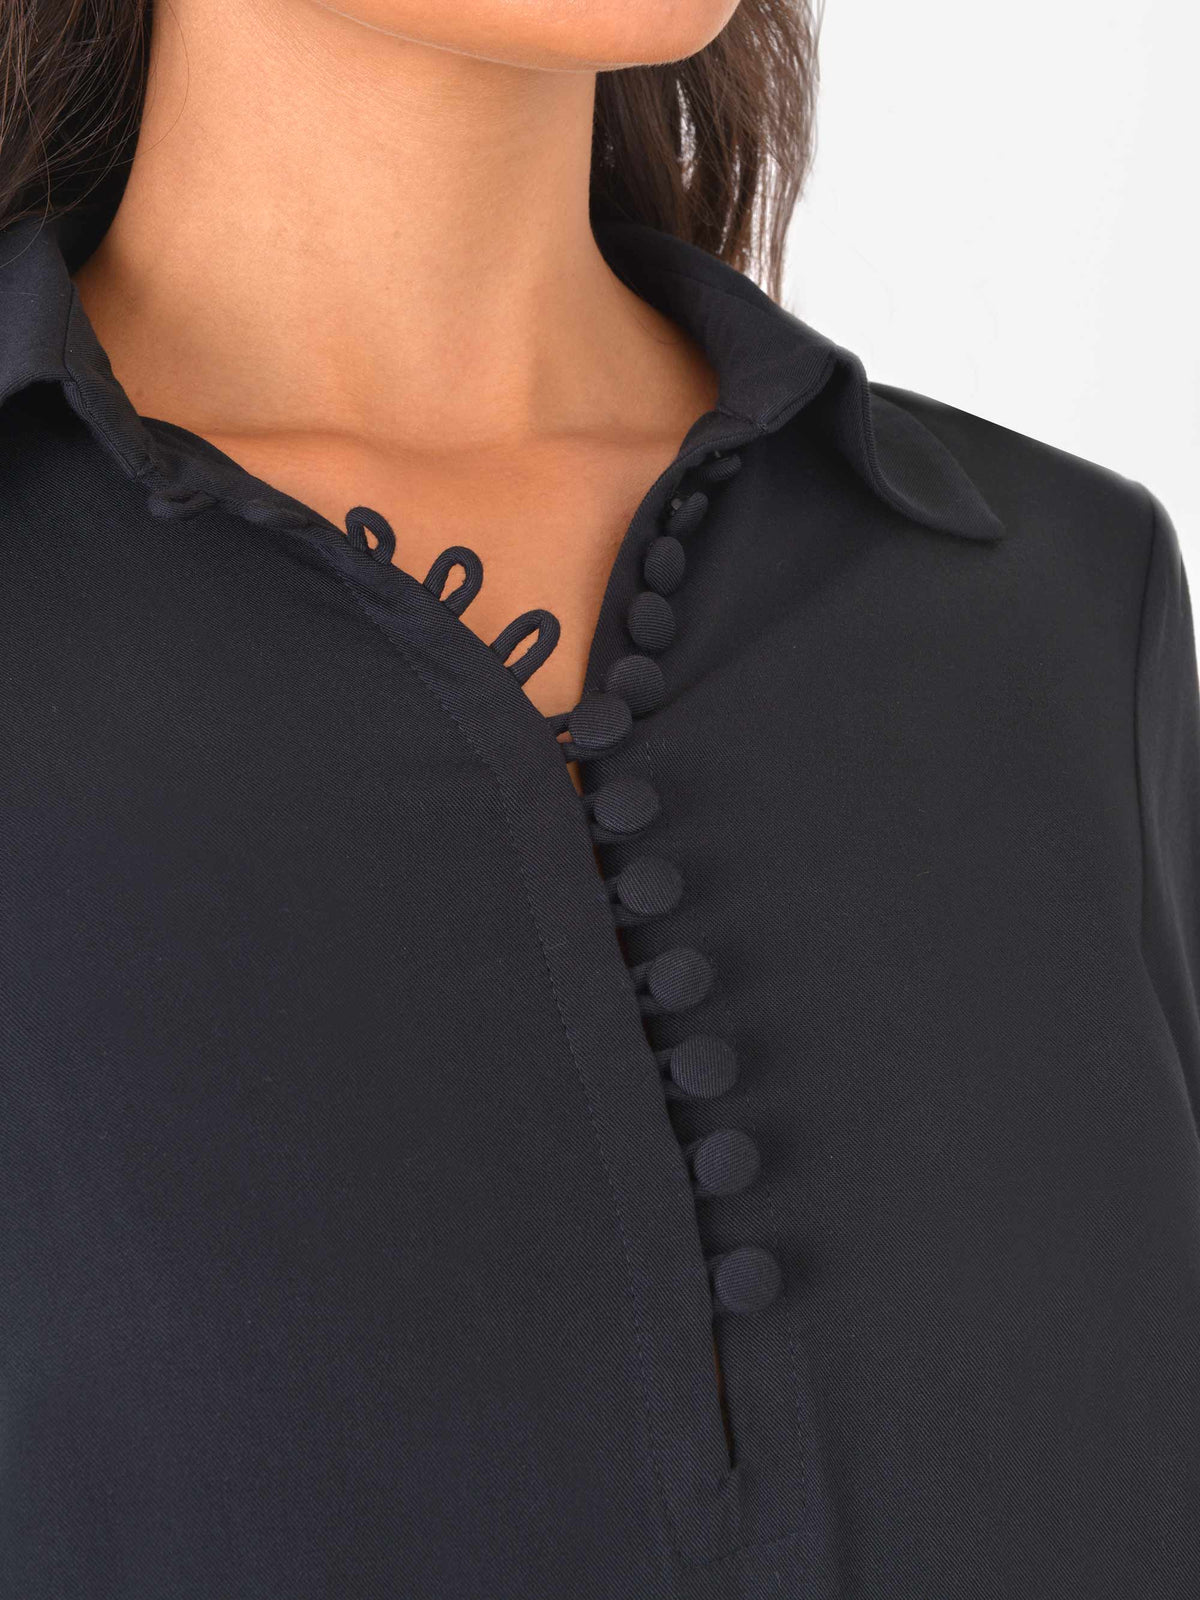 Pintuck Sleeve Button Shirt